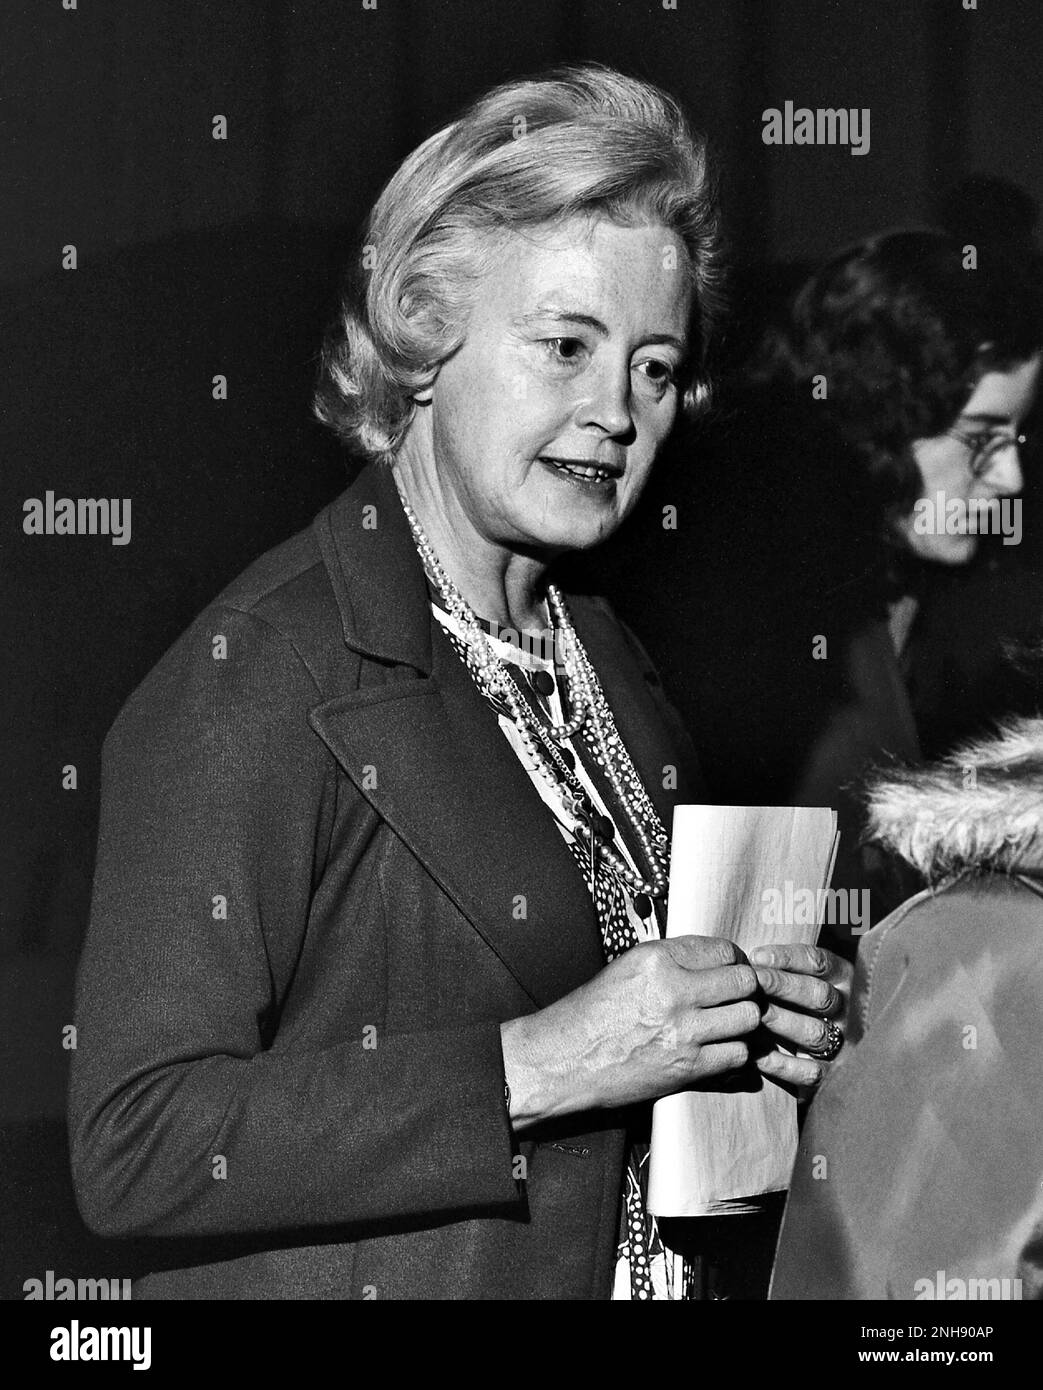 Margaret Burbidge in occasione di una conferenza al Mount Holyoke College Department of Physics nella primavera del 1974. Center Eleanor Margaret Burbidge Eleanor Margaret Burbidge (1919-2020) è stato un astronomo osservazionale e astrofisico britannico-americano. Fu uno dei fondatori della nucleosintesi stellare, lavorò su curve di rotazione galassia e quasar, e aiutò a sviluppare il debole spettrografo dell'oggetto sul telescopio spaziale Hubble. Foto Stock